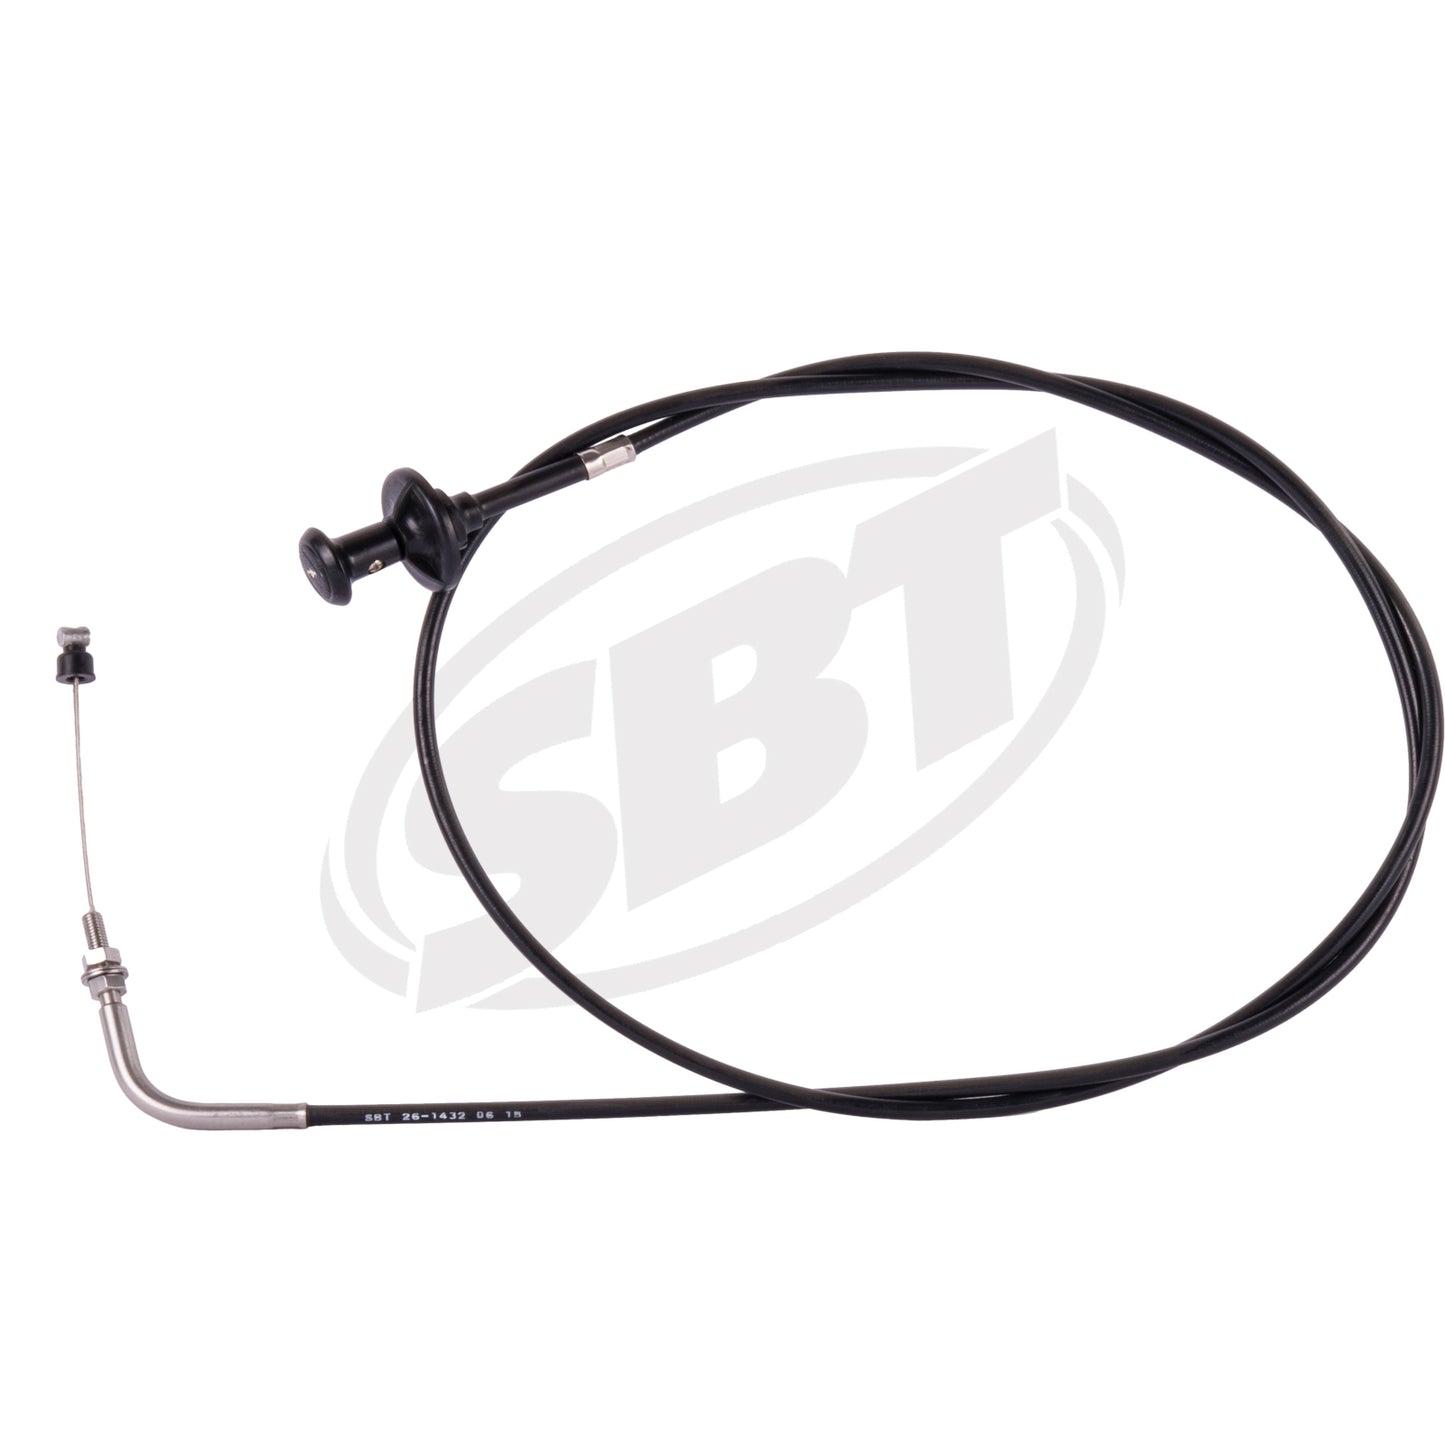 SBT Yamaha Choke Cable XL 700 F0M-U7242-00-00 1999 2000 2001 2002 2003 2004